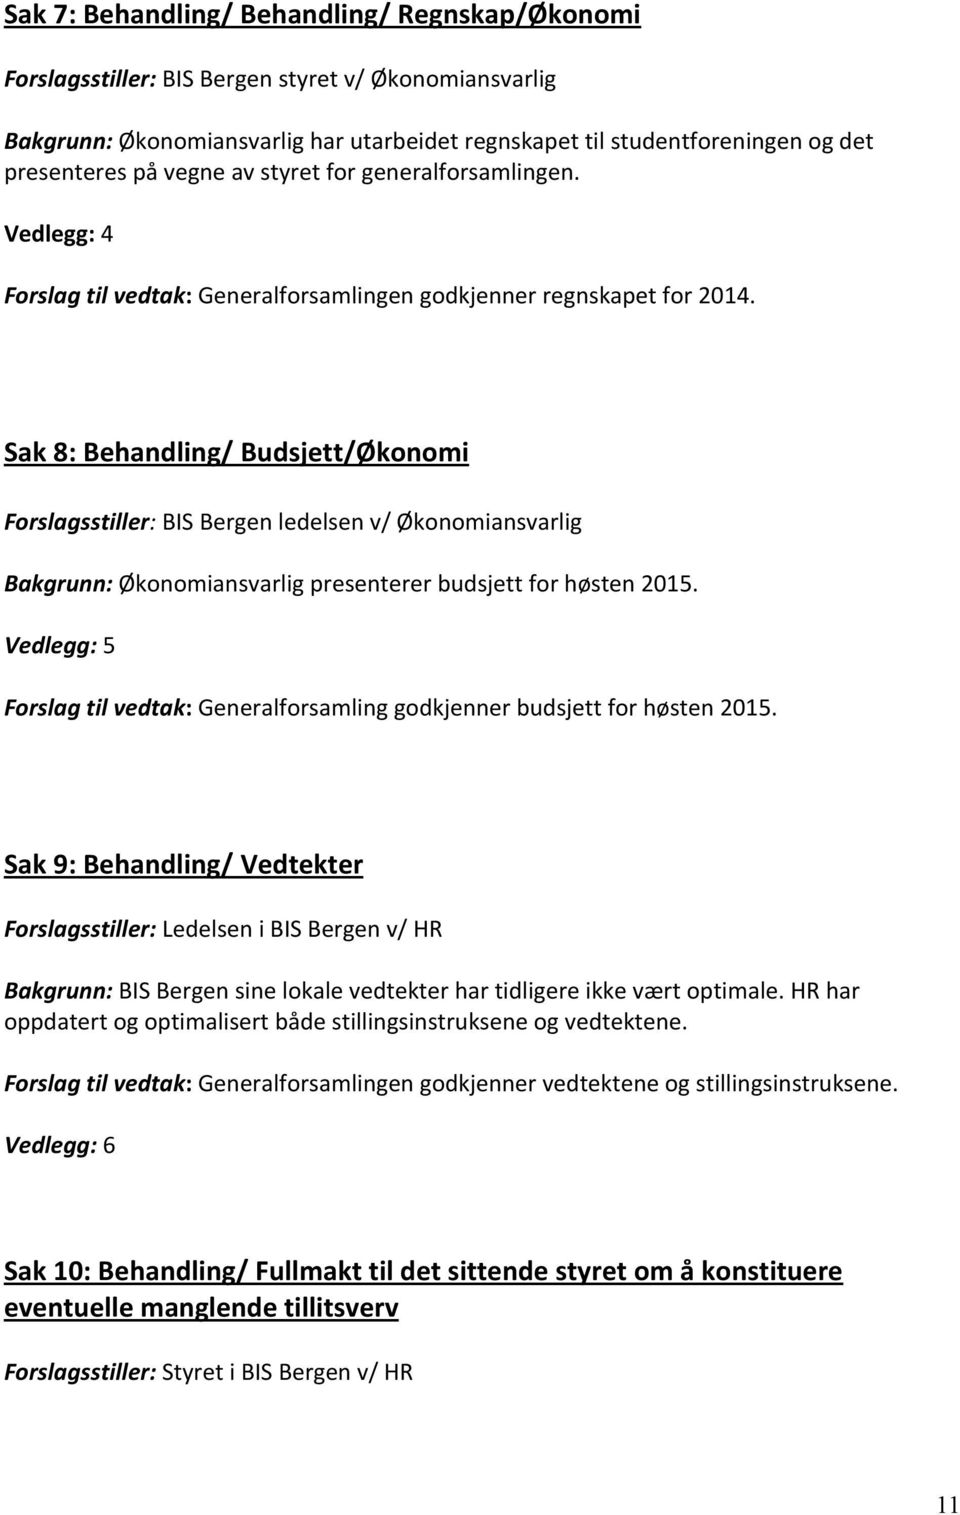 Sak8:Behandling/Budsjett/Økonomi Forslagsstiller:BISBergenledelsenv/Økonomiansvarlig Bakgrunn:Økonomiansvarligpresentererbudsjettforhøsten2015.